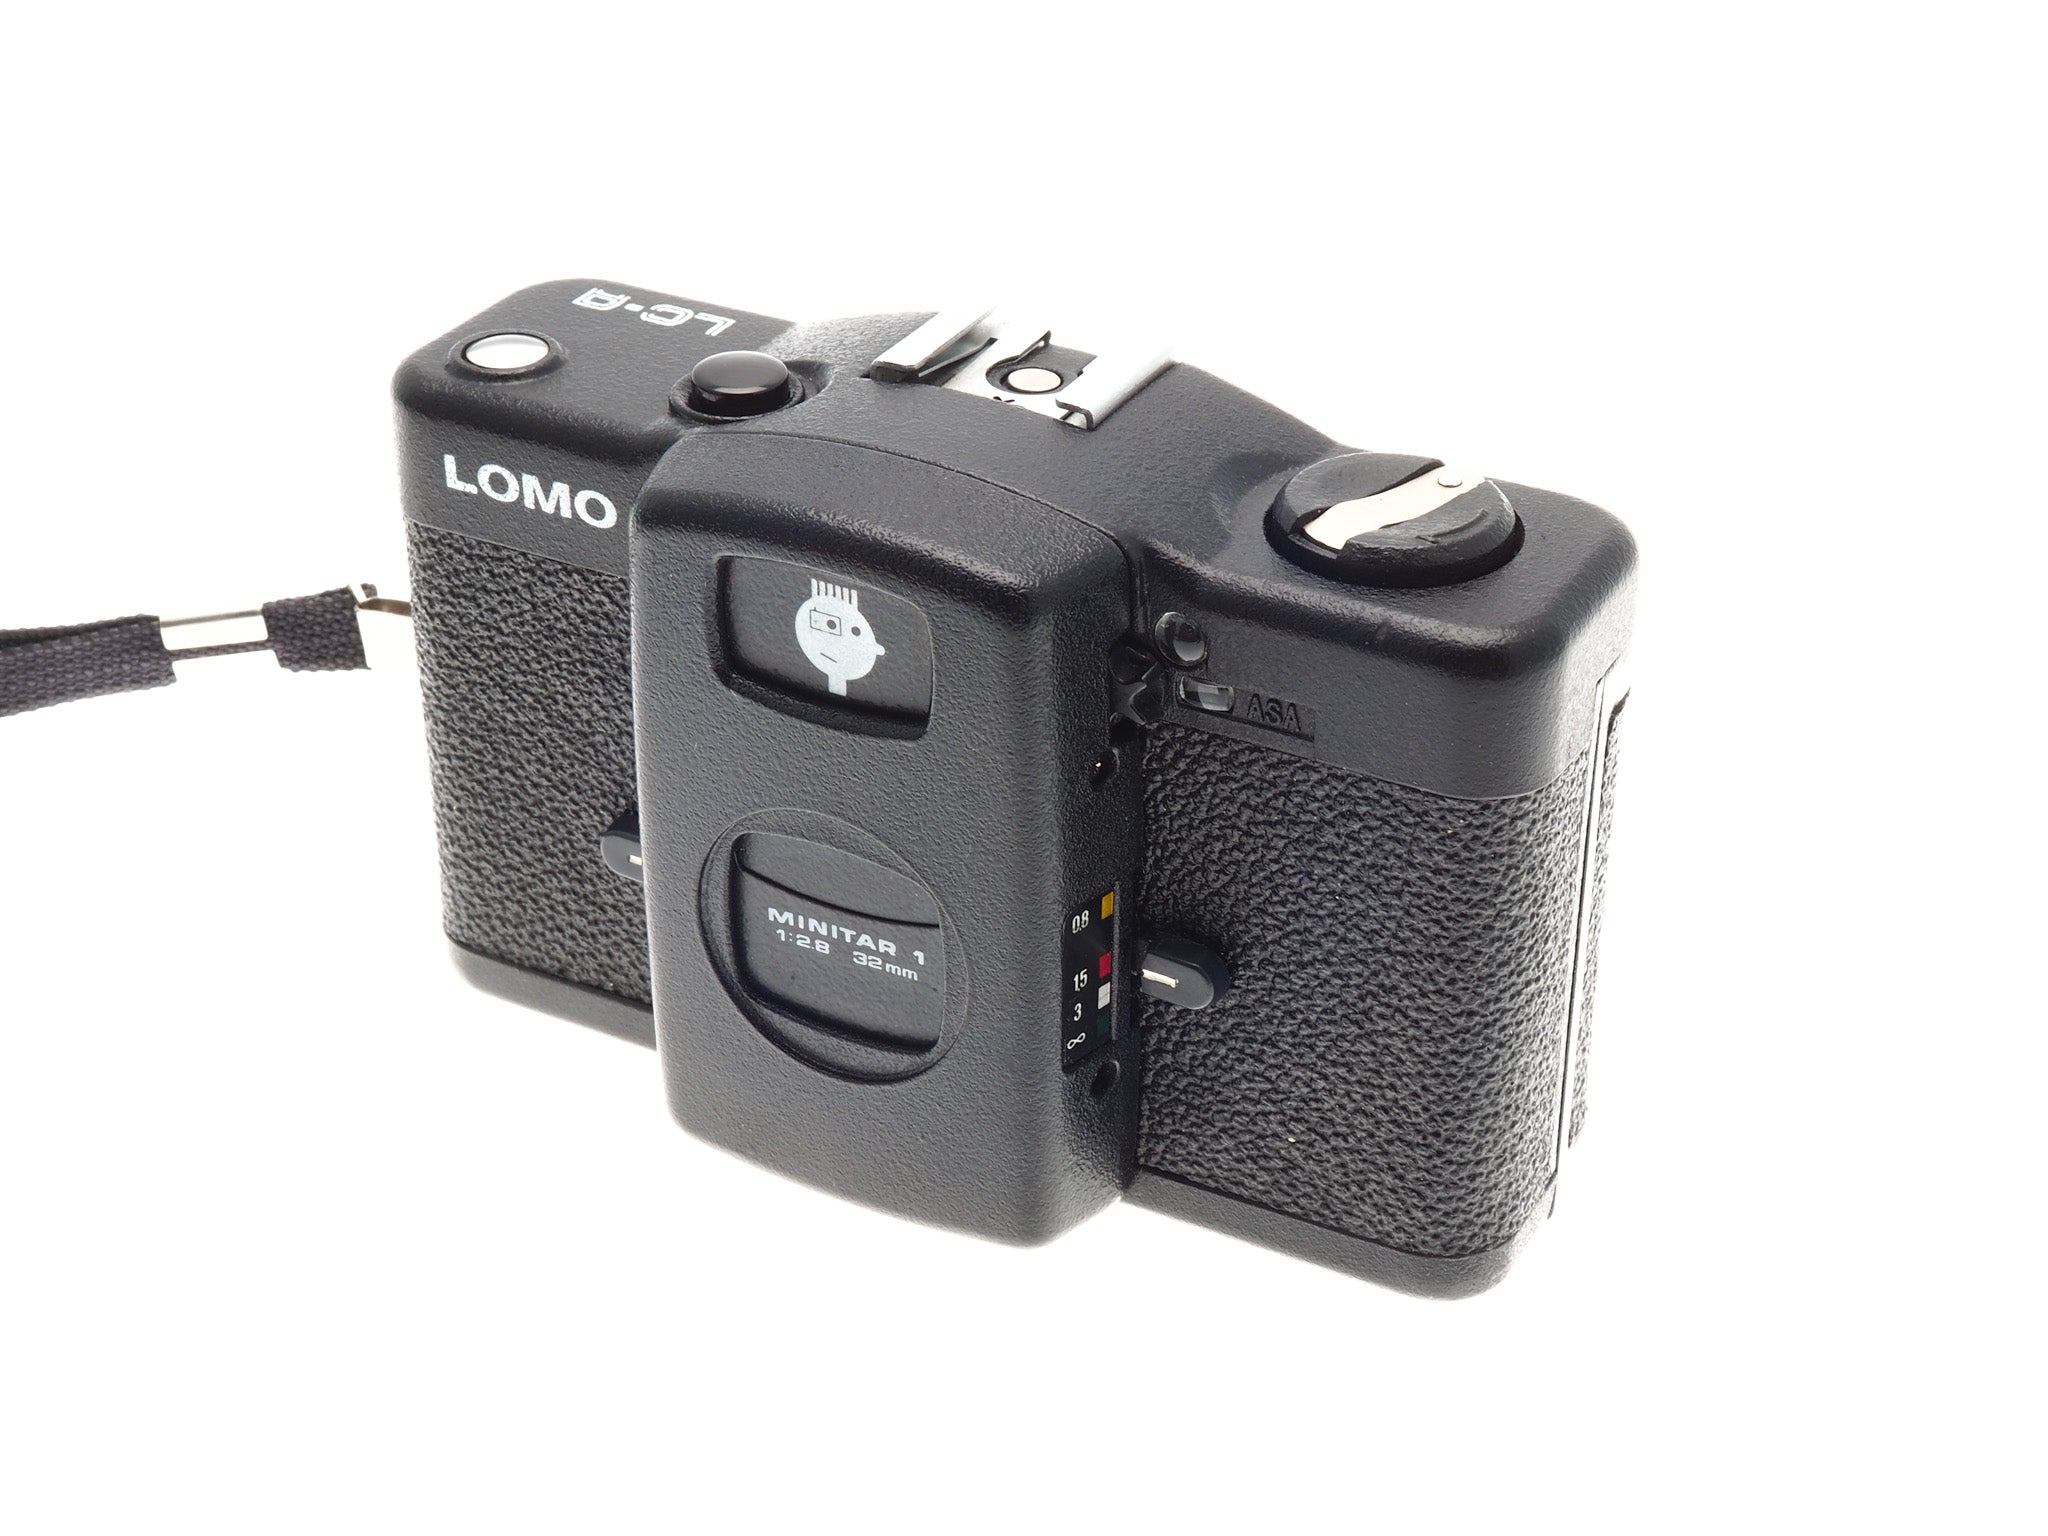 LOMO LC-Aロモ トイカメラ - フィルムカメラ